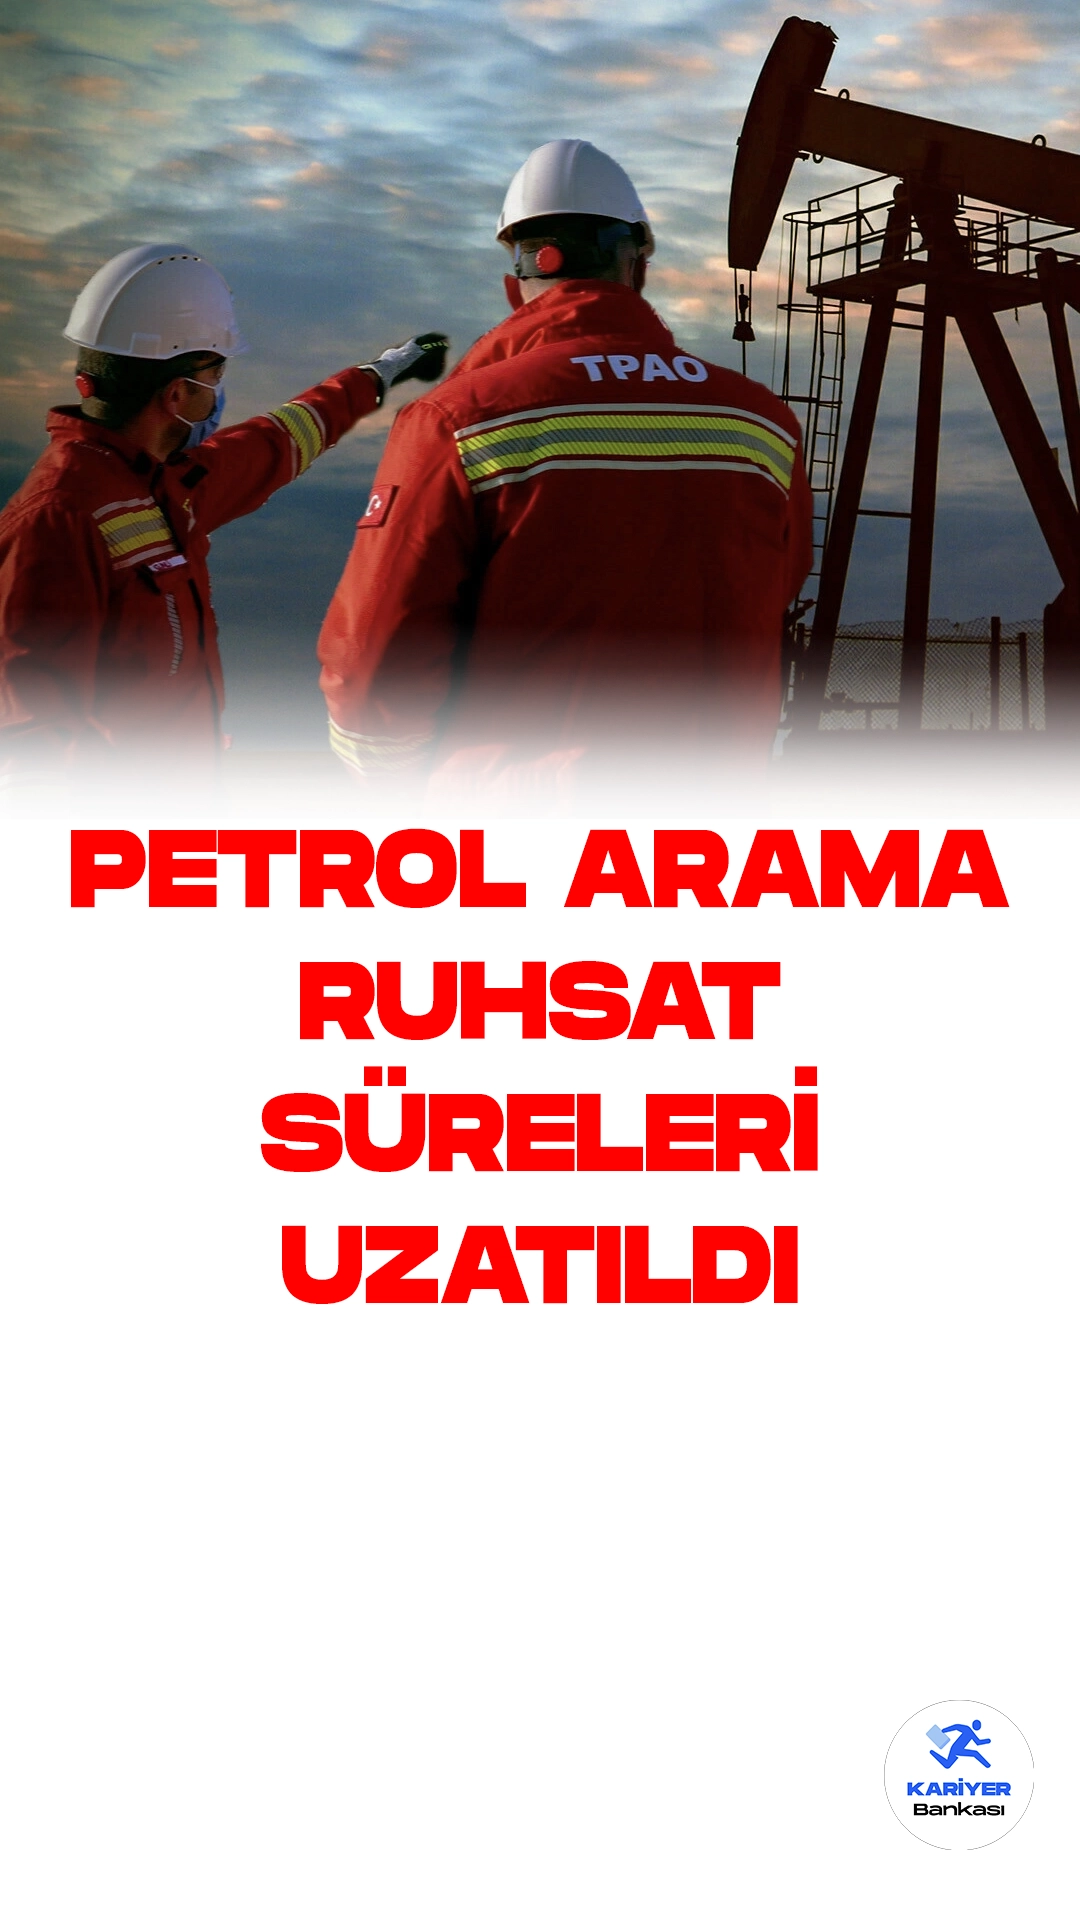 TPAO'nun İstanbul ve Tekirdağ Petrol Araştırmaları İçin Ruhsat Süresi 2 Yıl Uzatıldı.Türkiye Petrolleri Anonim Ortaklığı (TPAO), İstanbul ve Tekirdağ'da bulunan 2 sahası için petrol arama ruhsat süresinin 2 yıl uzatıldığını duyurdu. Enerji ve Tabii Kaynaklar Bakanlığı Maden ve Petrol İşleri Genel Müdürlüğü tarafından alınan kararlar, bugünkü Resmi Gazete'de yayımlandı.